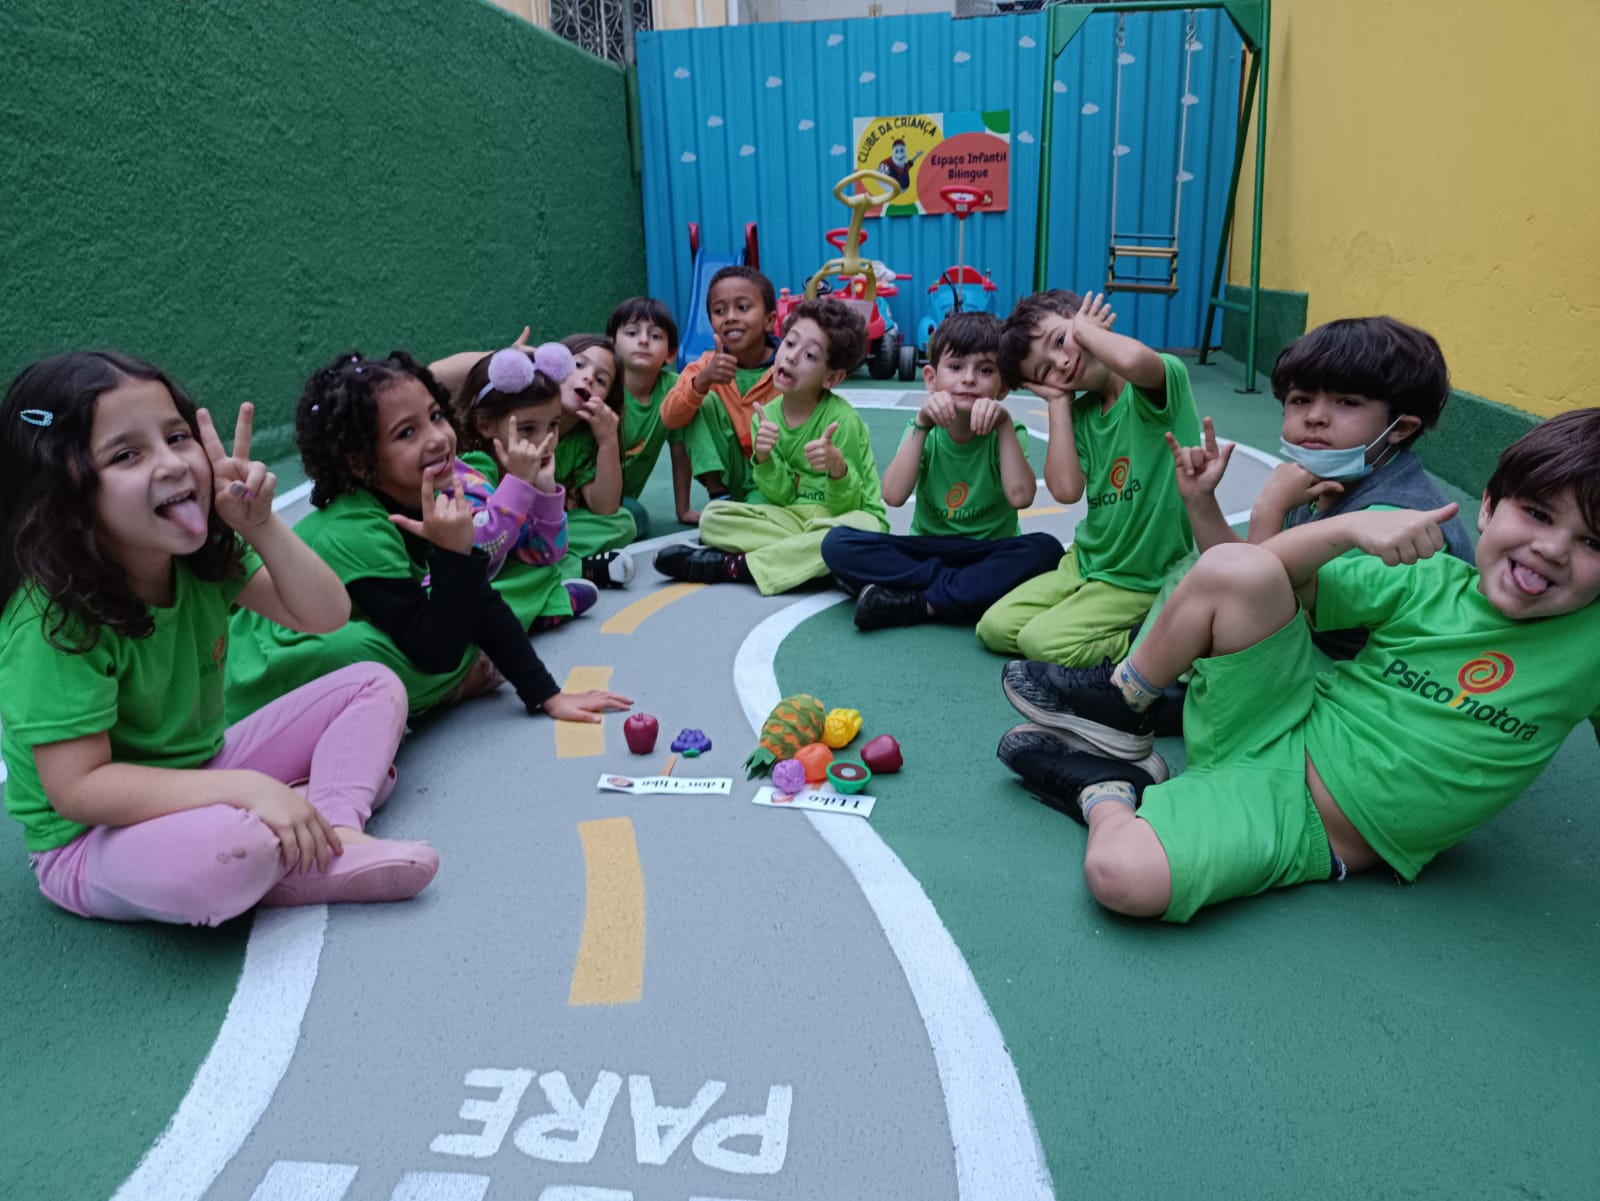 The kids - Crianças de verde 